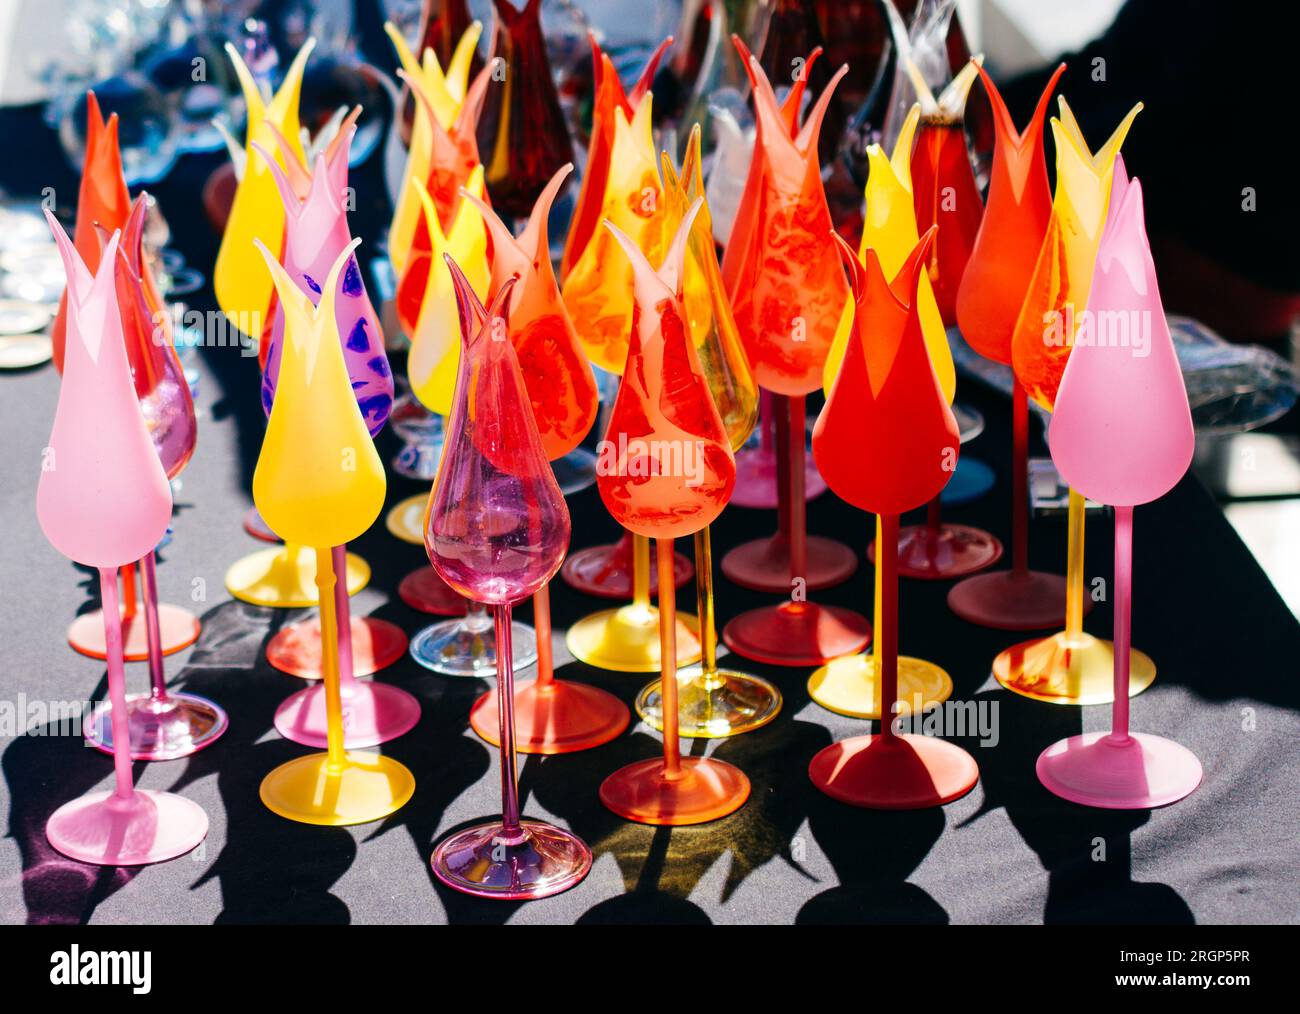 Tulip shaped handcrafts in the bazaar Stock Photo